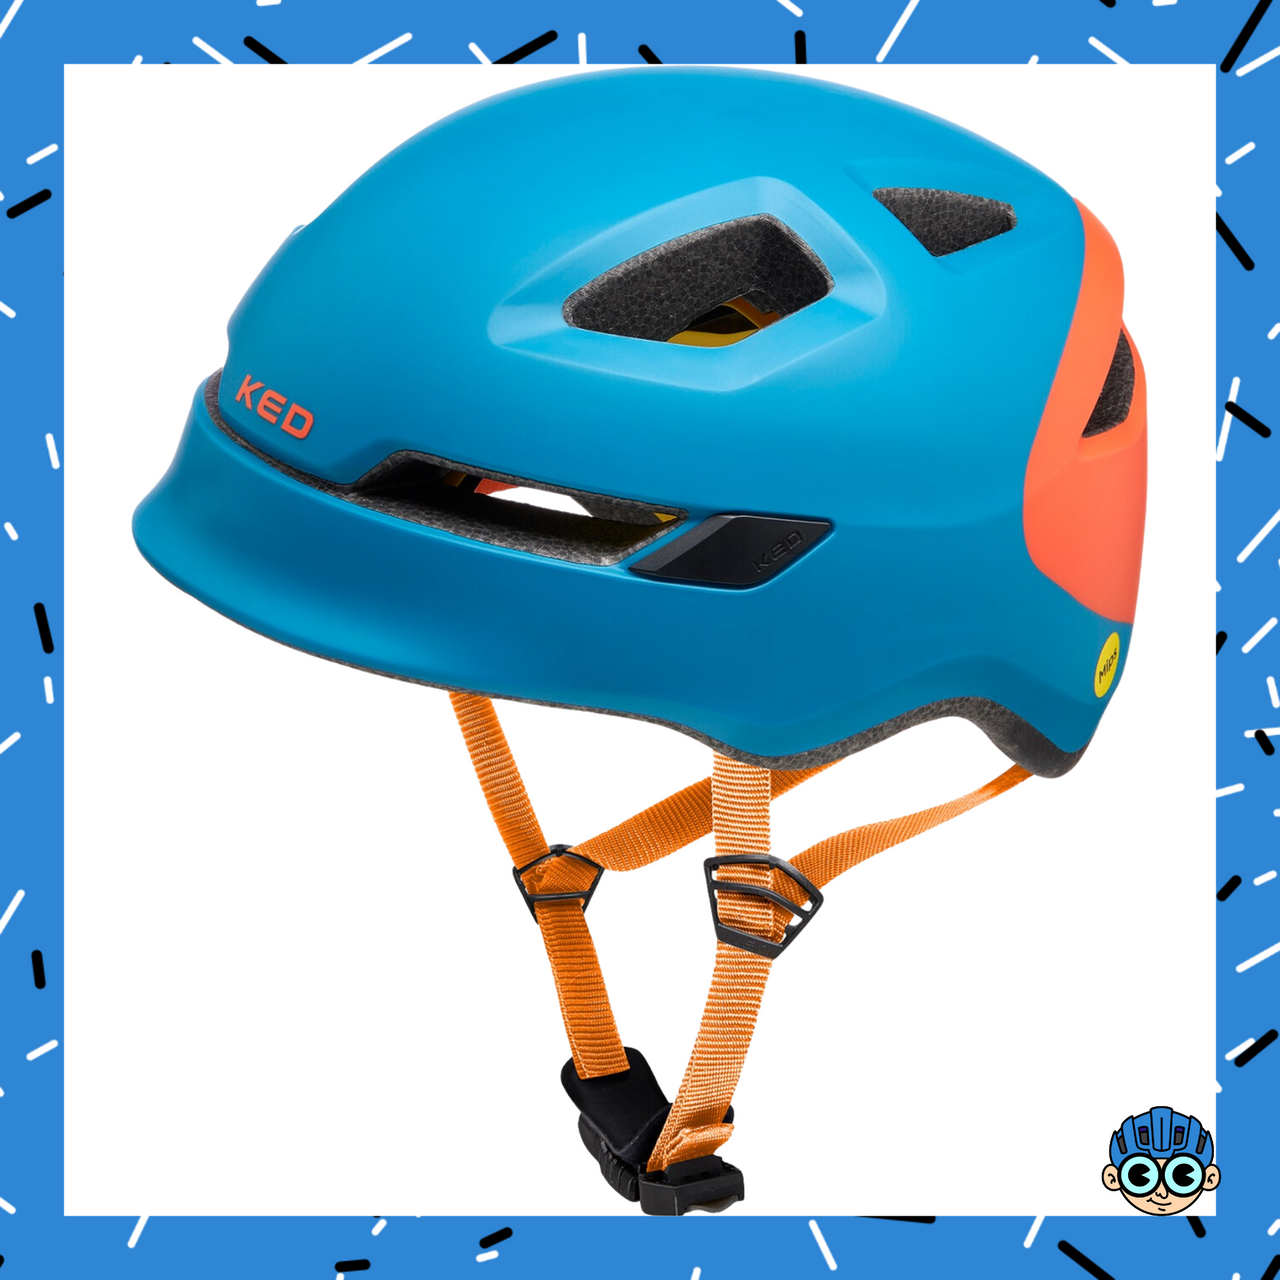 קסדת אופניים לילדים ונוער KED POP משולבת טכנולוגיית MIPS להגנה מירבית